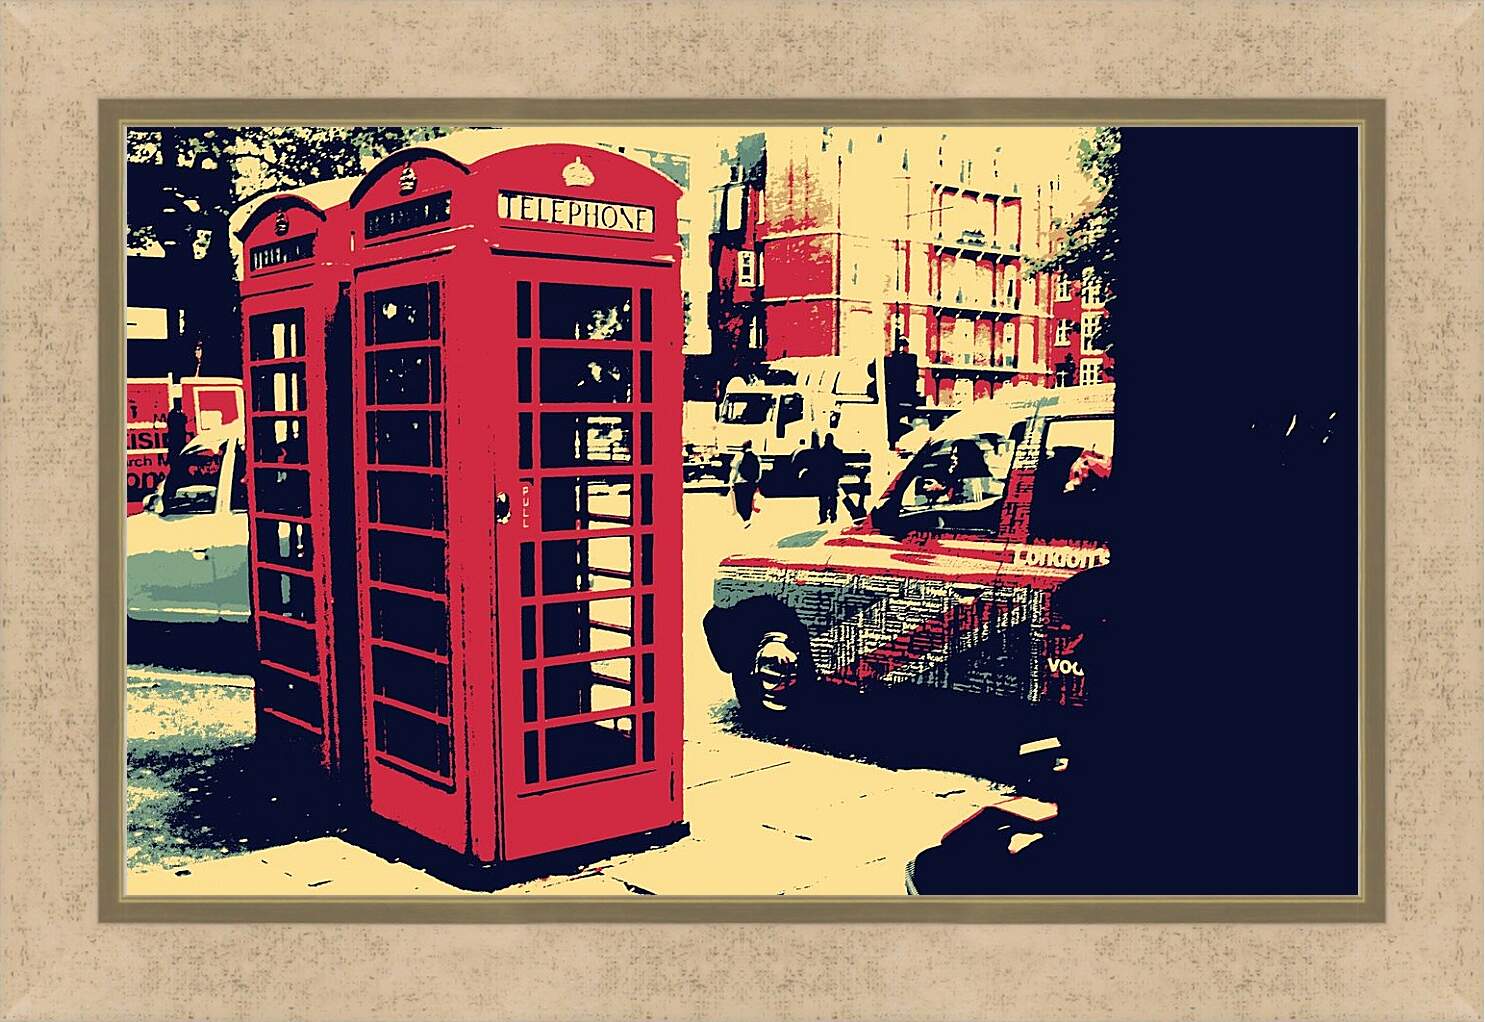 Картина в раме - Телефонная будка. Лондон